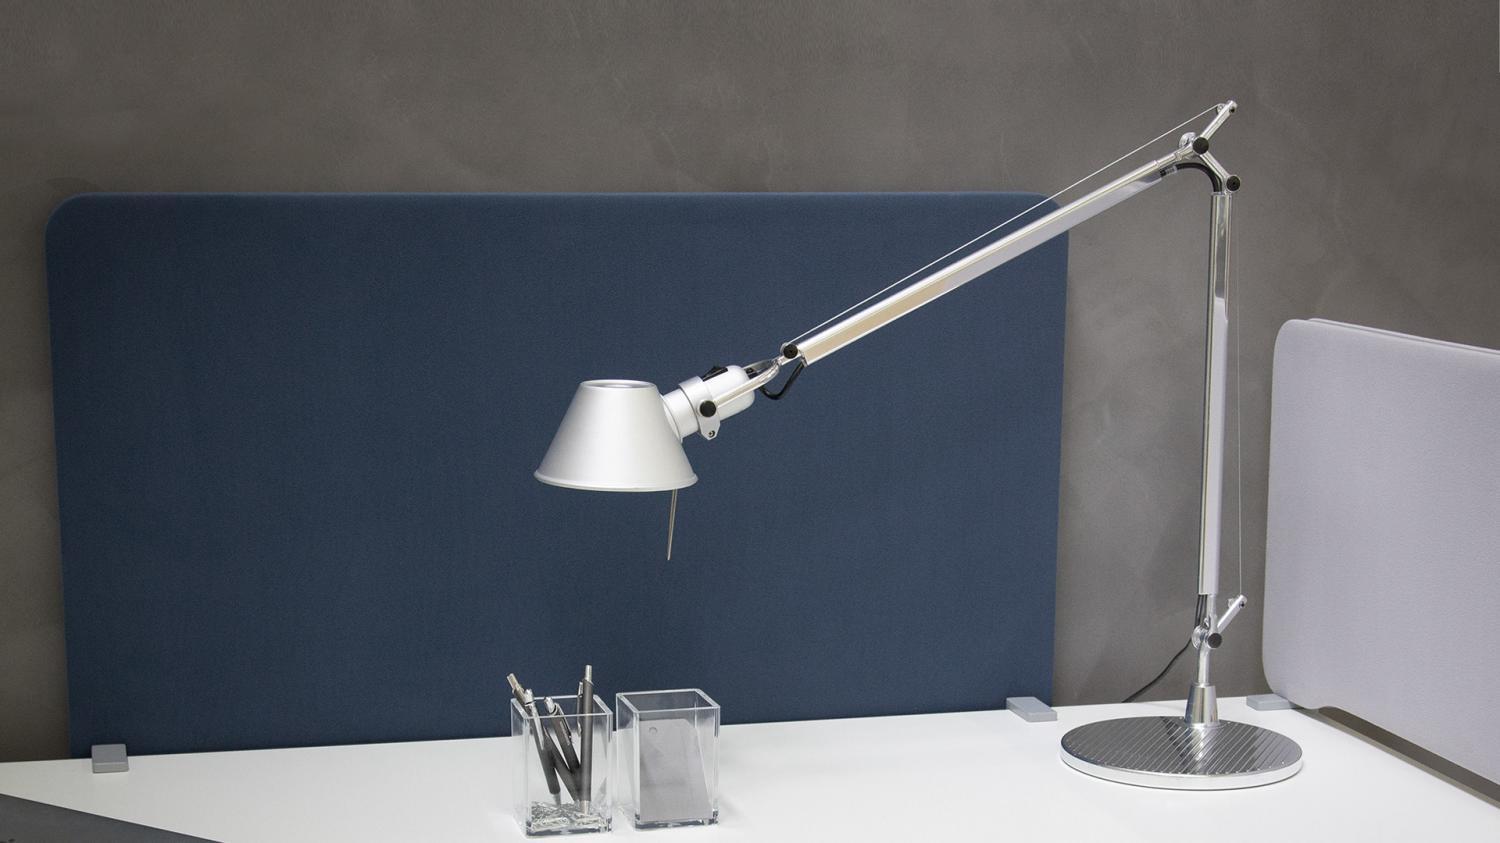 Tolomeo stolní lampa s detektorem přítomnosti LED 3000K - tělo lampy - ARTEMIDE